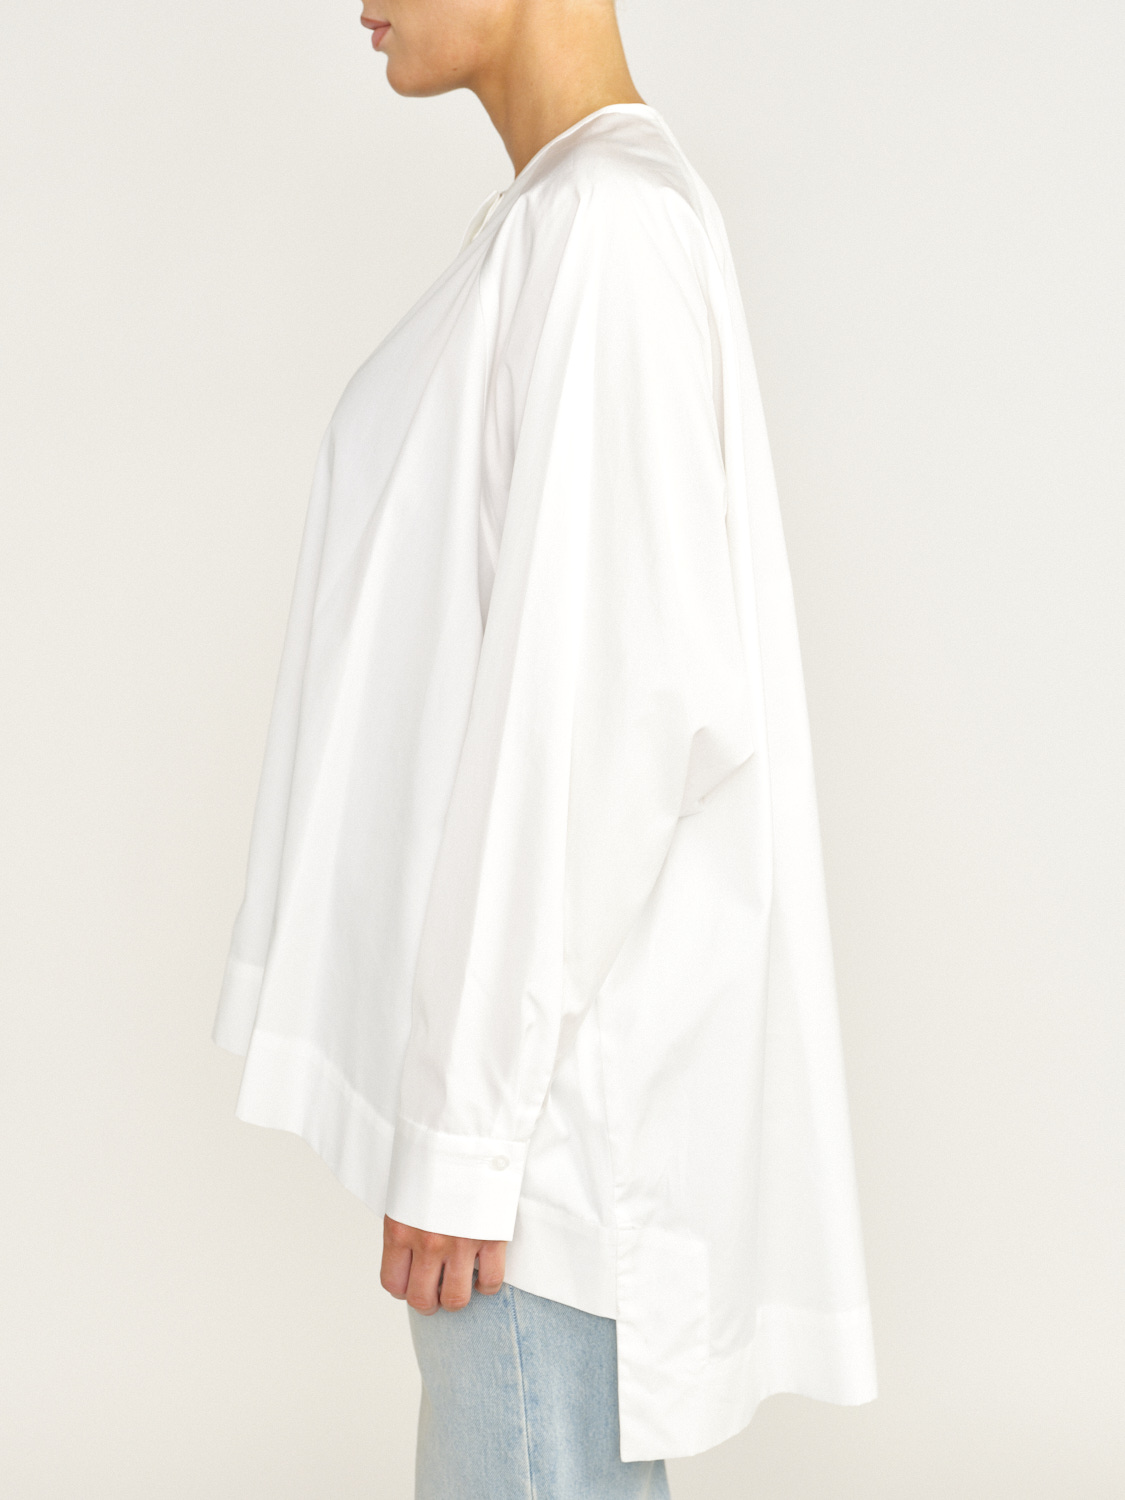 Eva Mann Blouse oversized en coton avec une coupe droite blanc 34